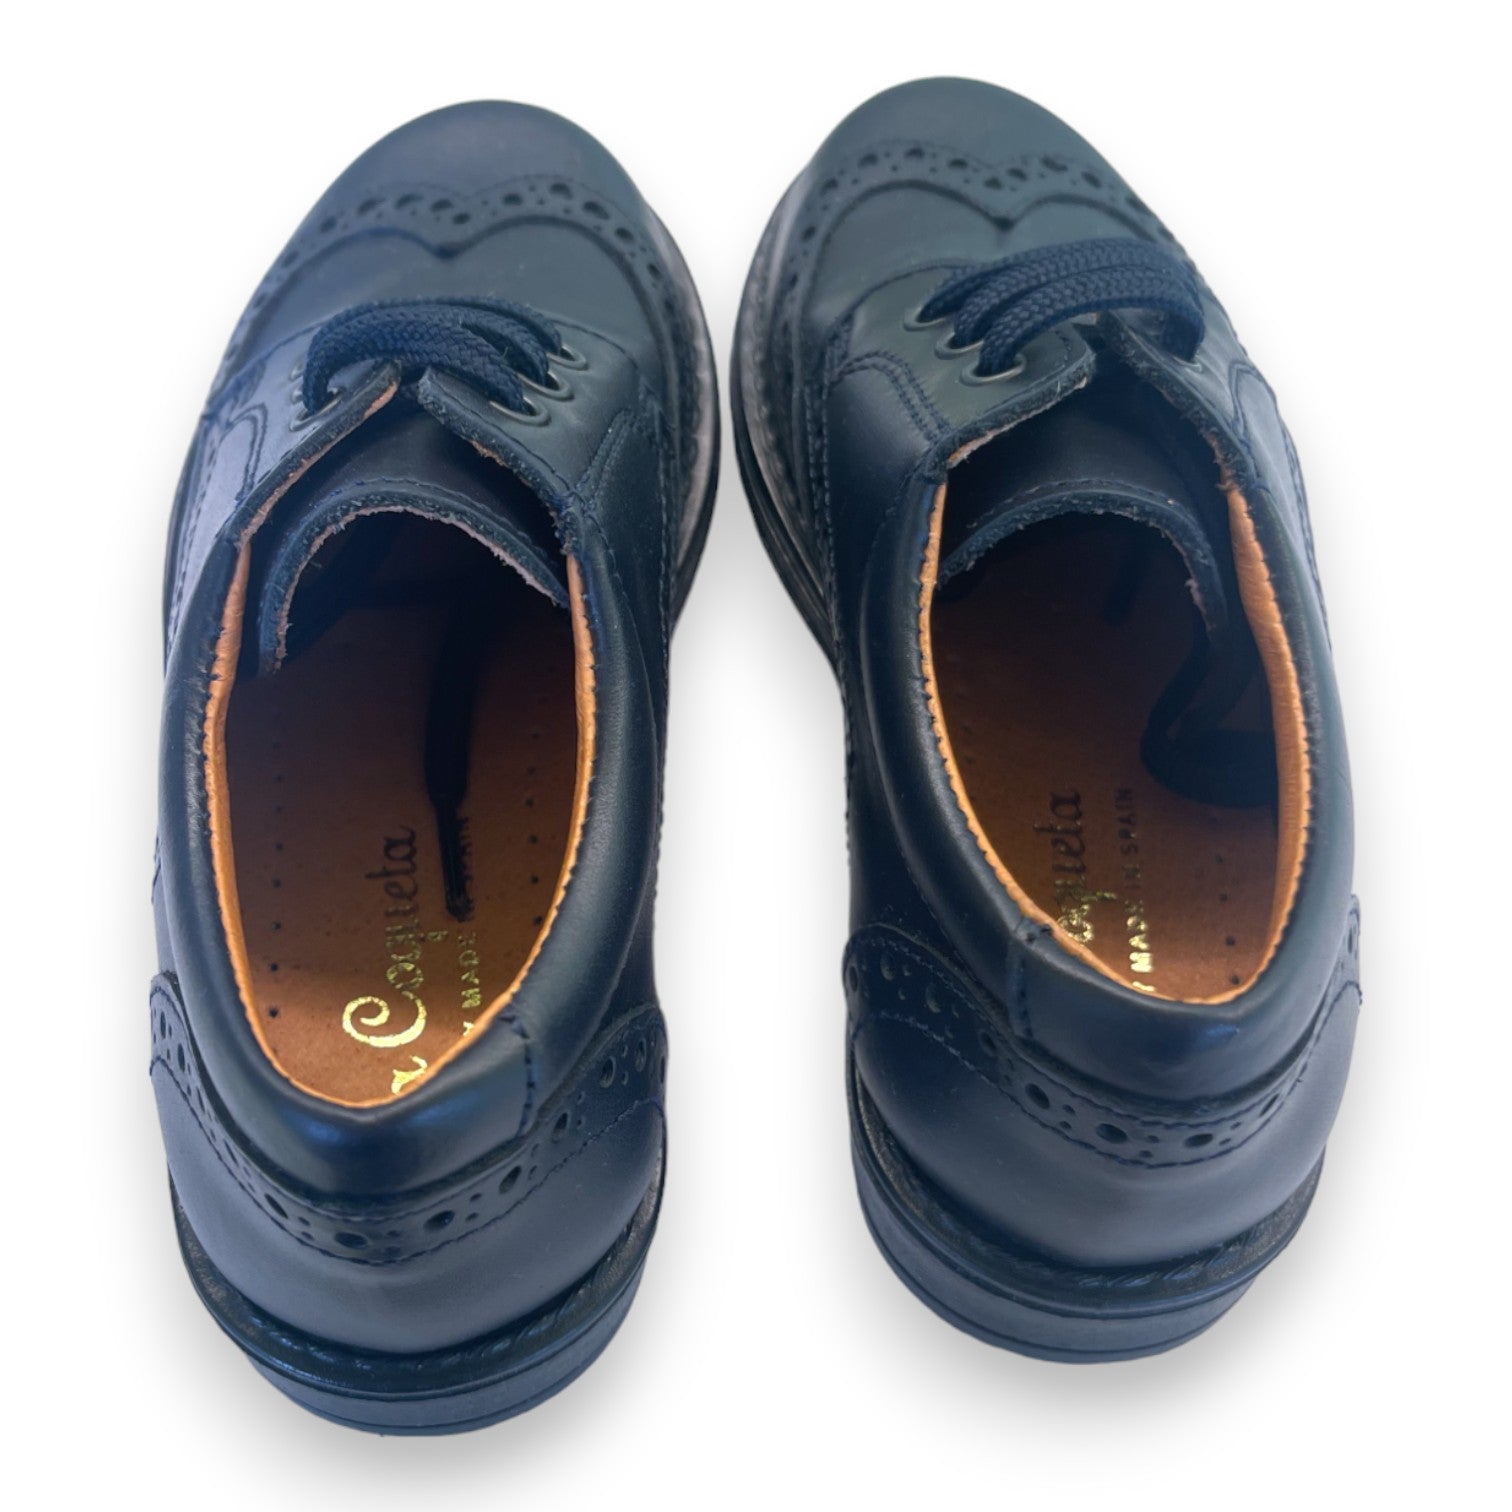 LA COQUETA - Chaussures en cuir bleu marines - 26